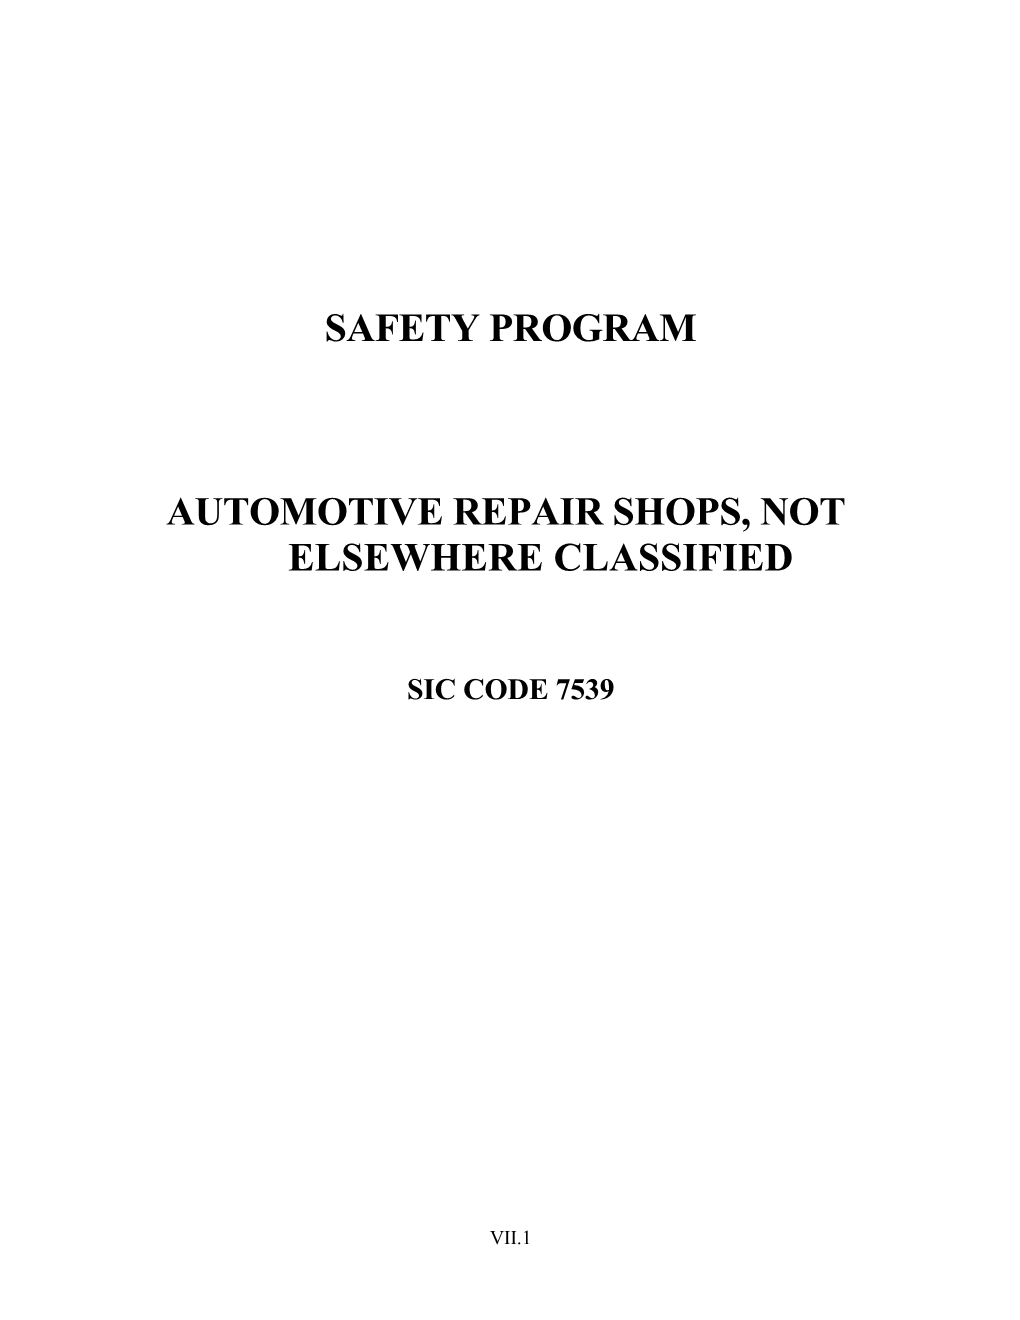 Automotive Repair Shops, Not